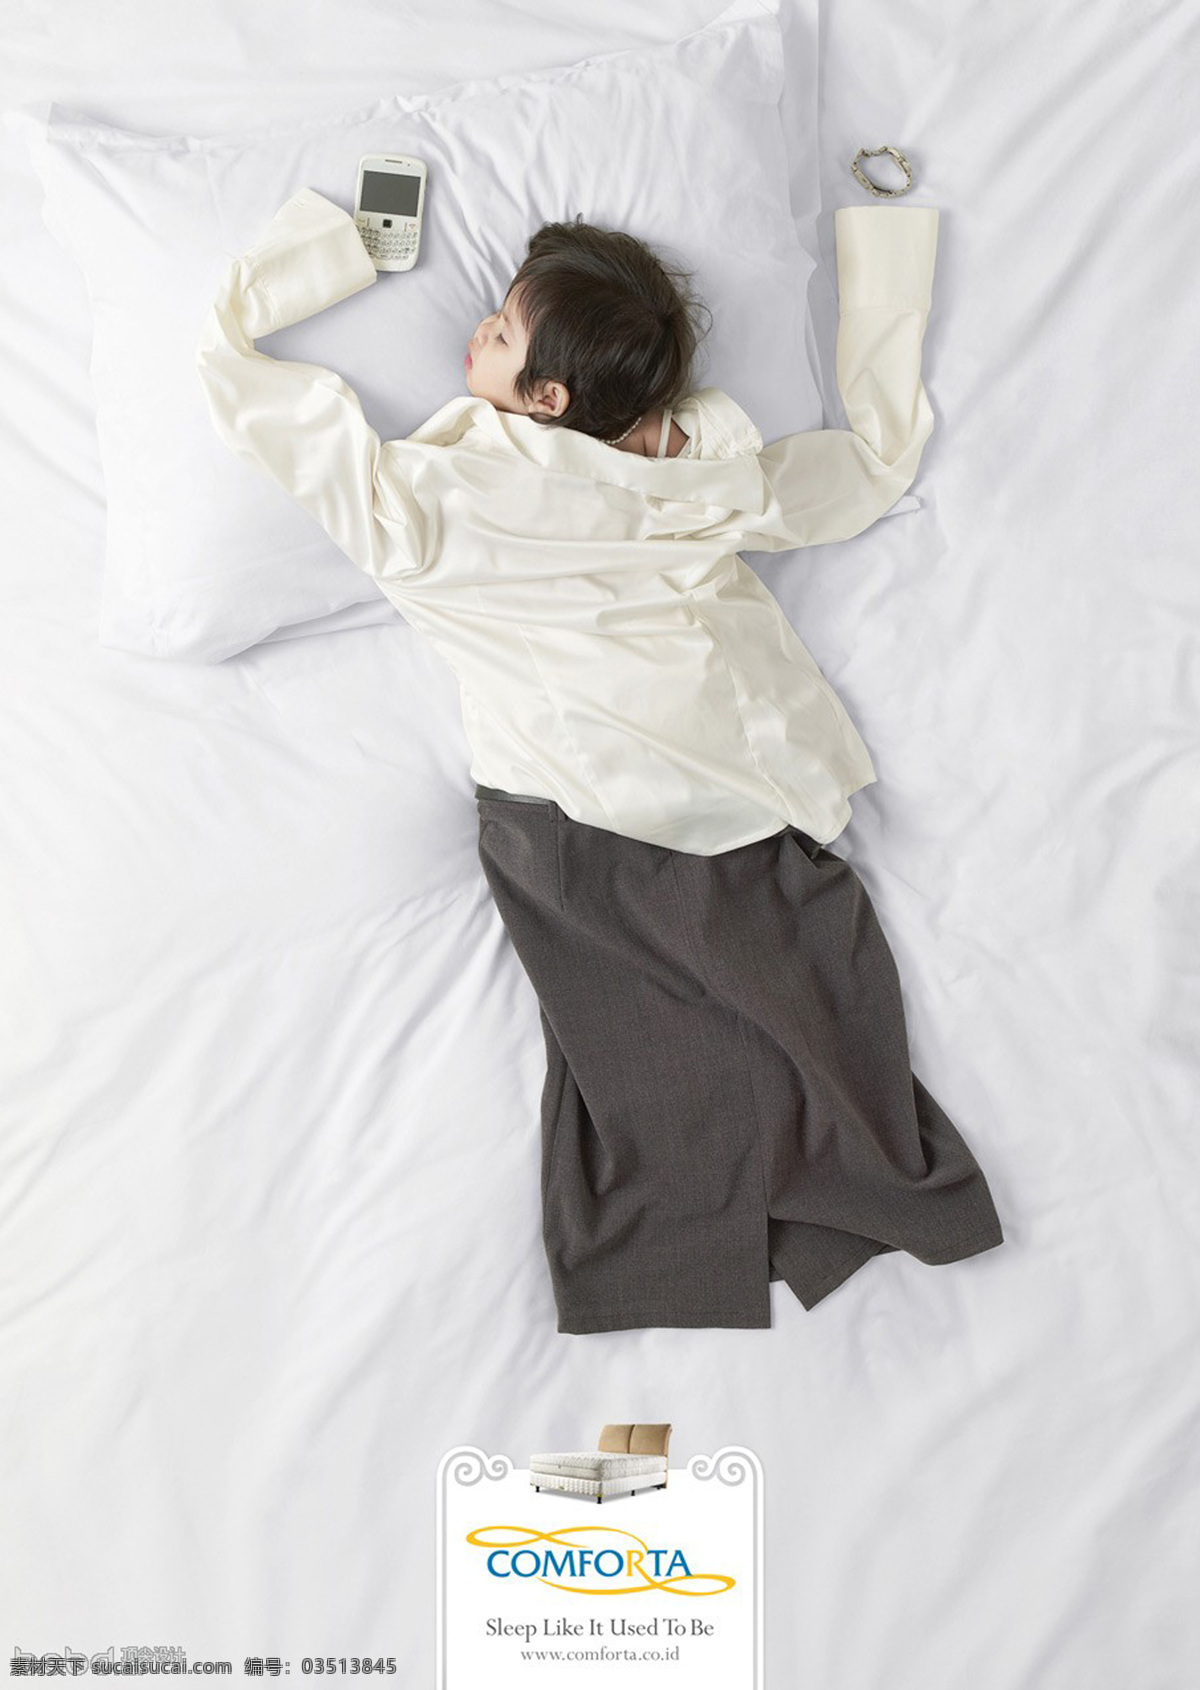 创意 广告 创意广告 服装创意 内涵 睡眠 招贴设计 床垫创意 小孩睡眠 海报 其他海报设计